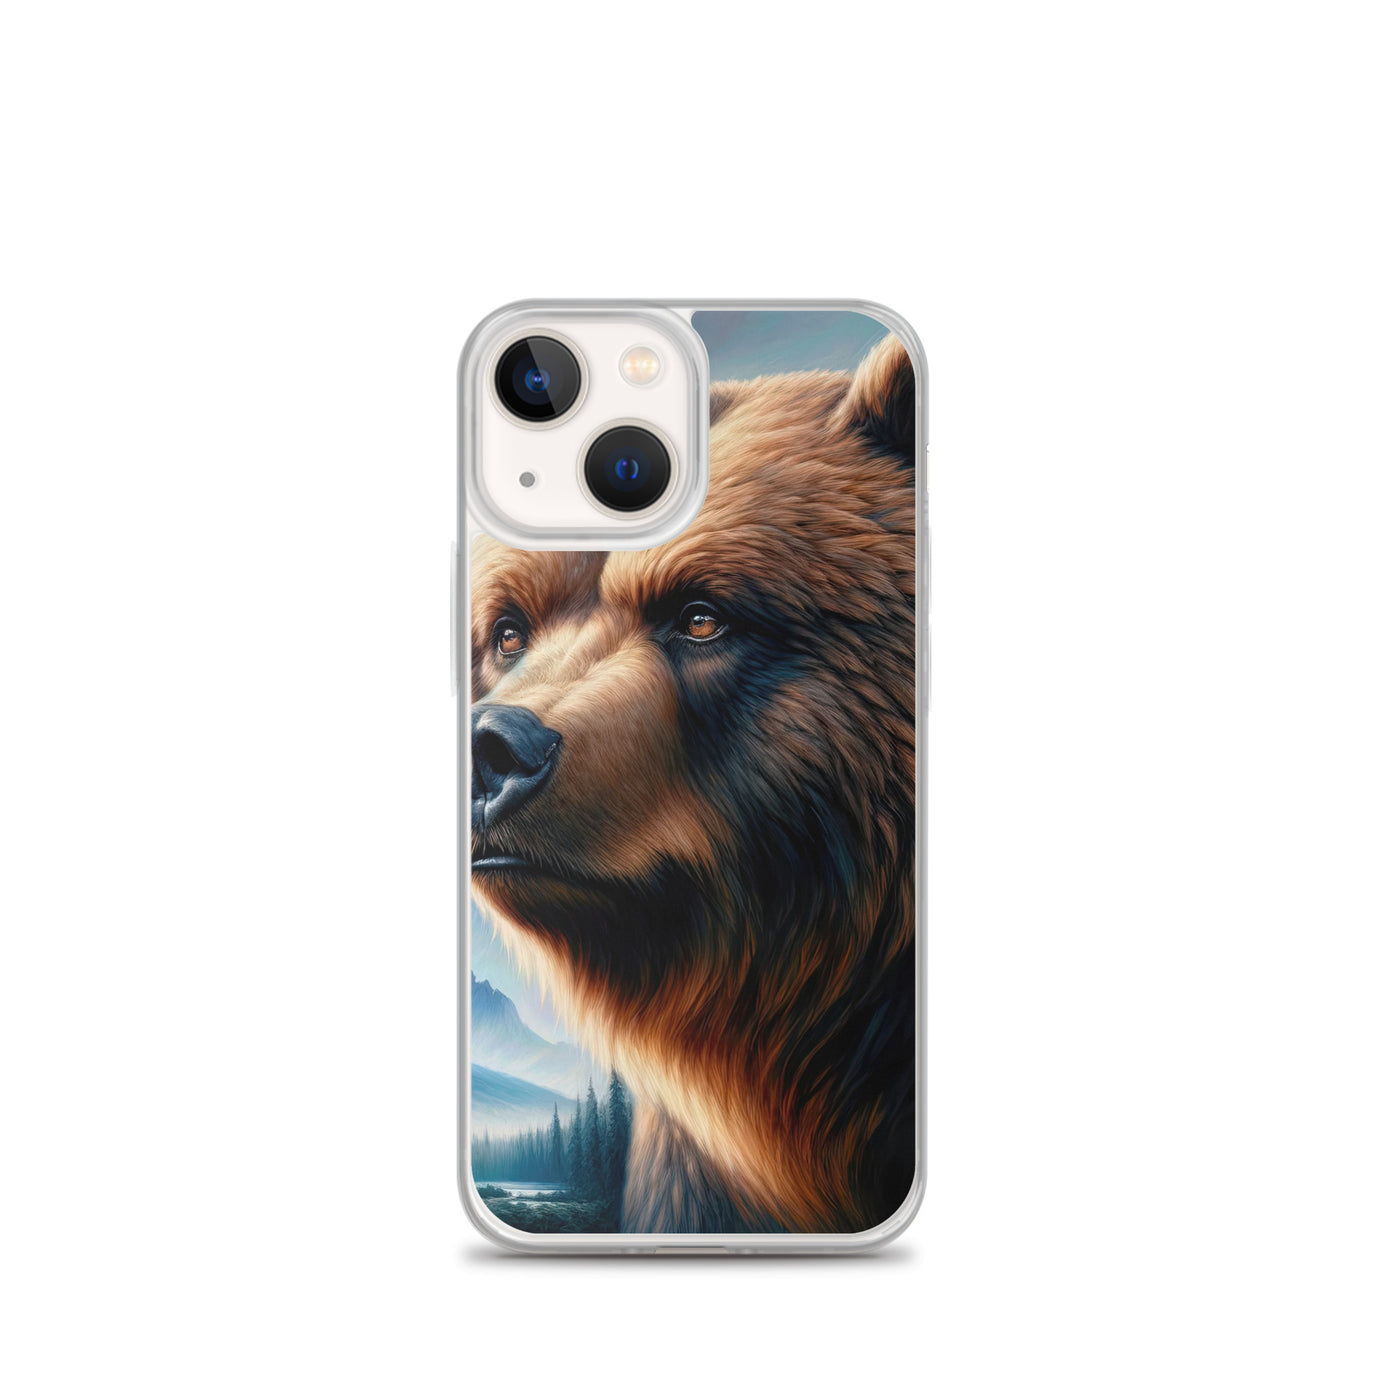 Ölgemälde, das das Gesicht eines starken realistischen Bären einfängt. Porträt - iPhone Schutzhülle (durchsichtig) camping xxx yyy zzz iPhone 13 mini